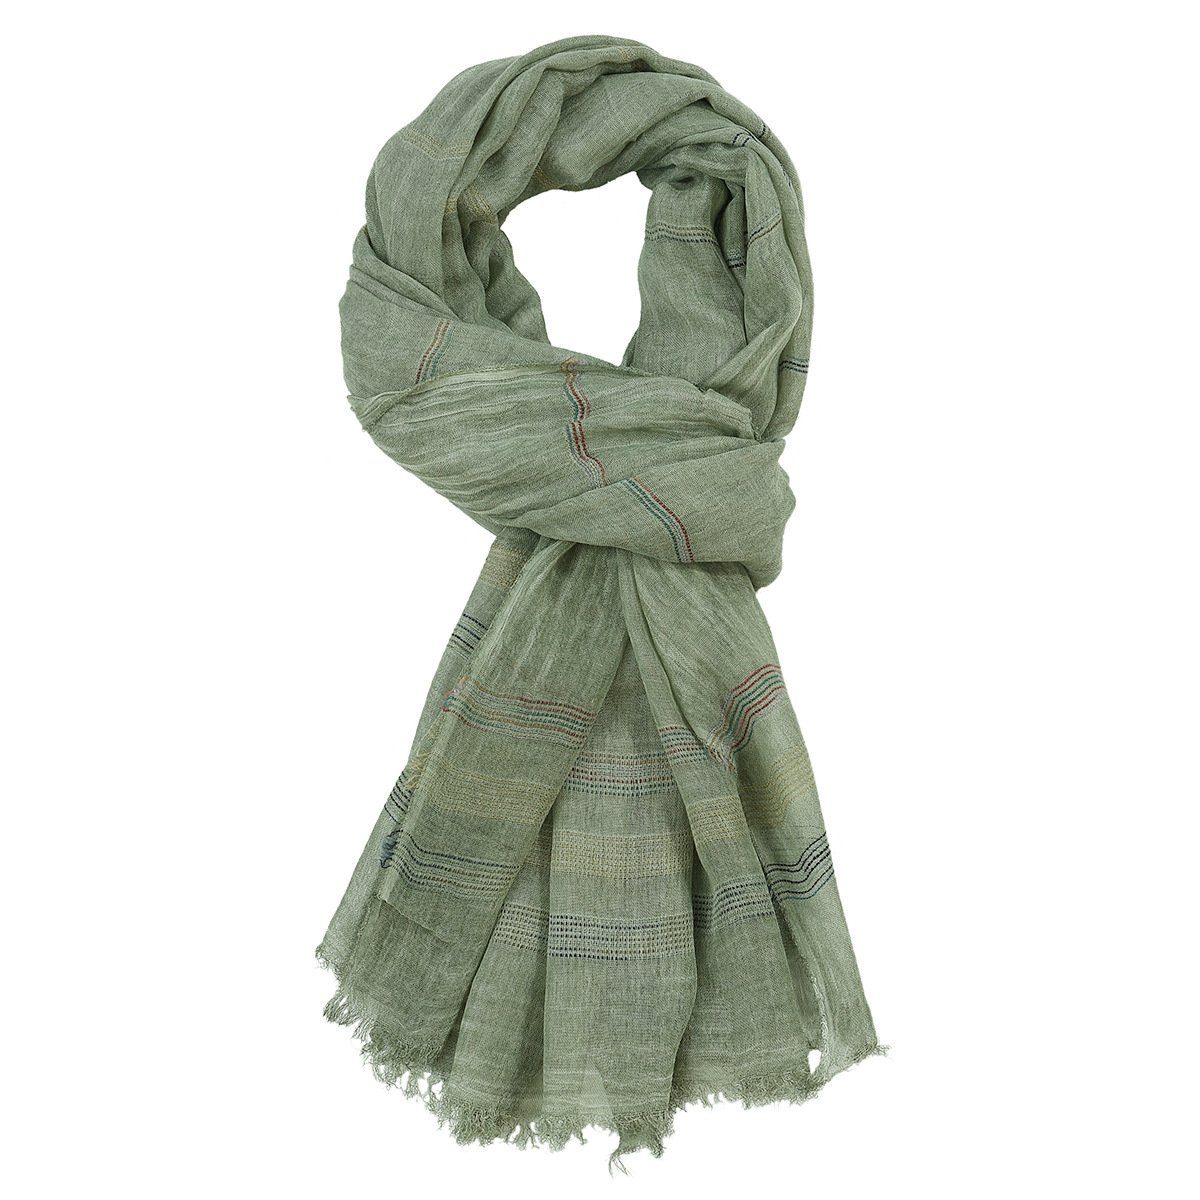 GelldG Modeschal Reversible Warme und weiche Unisex Schal Stola Wrap Solid Color grün